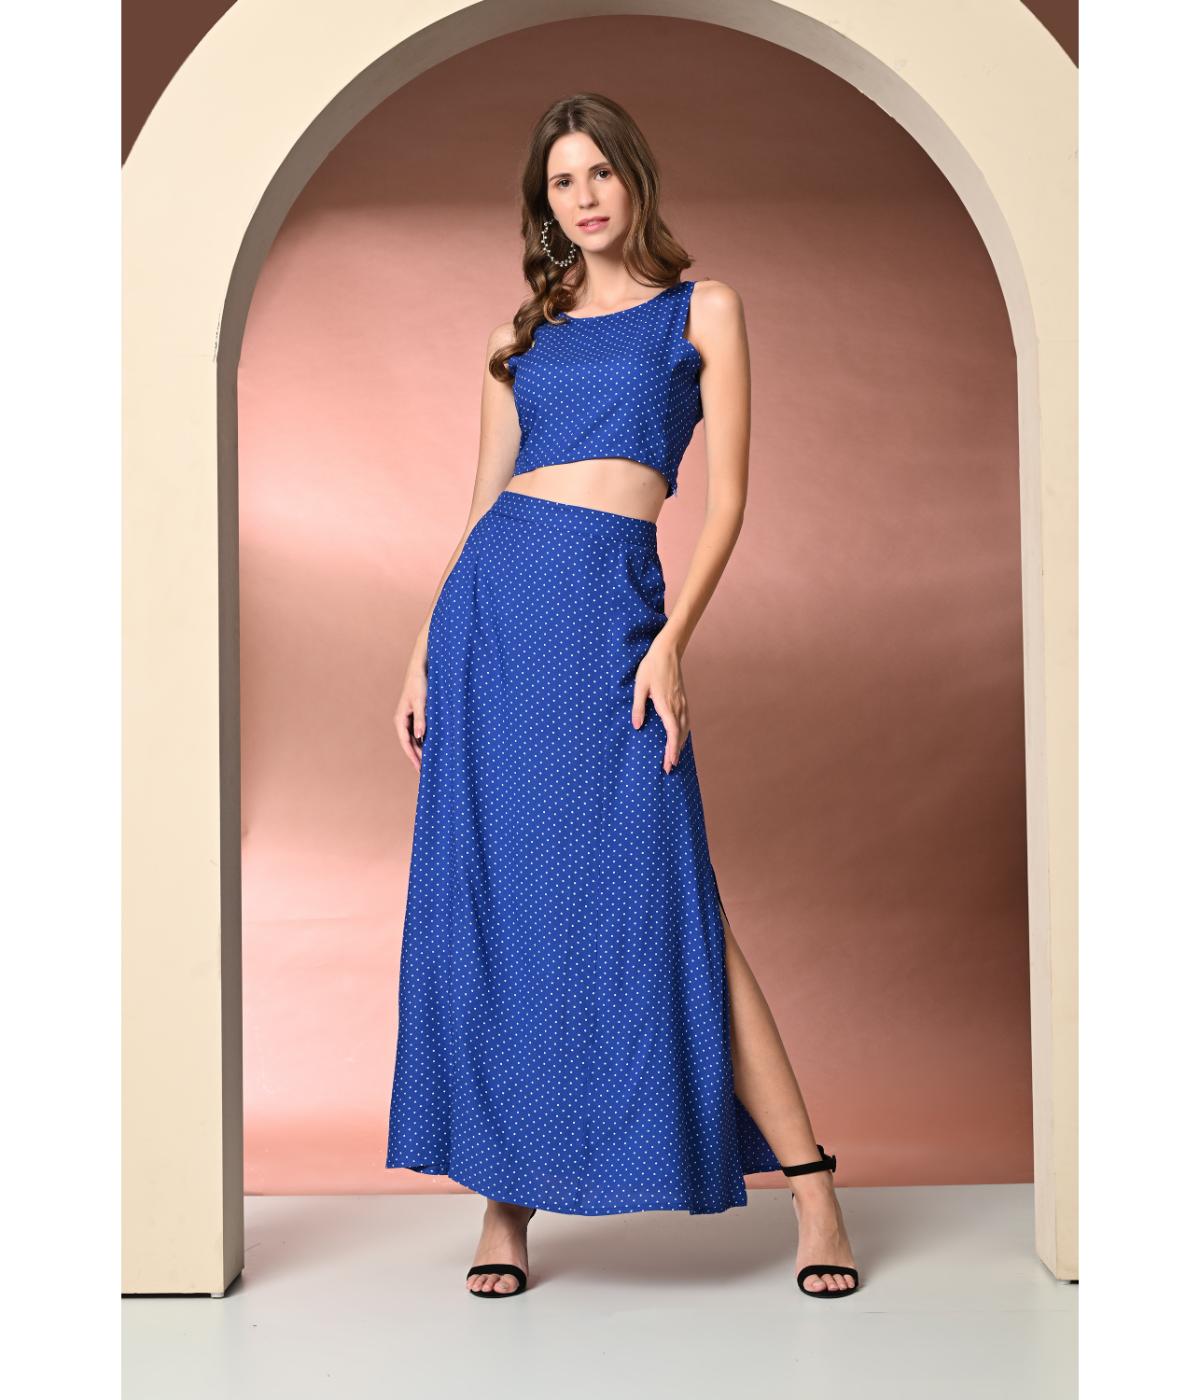 Daevish New Polka Dot's Printed Top Skirt Co Ord Set for Women & Girls